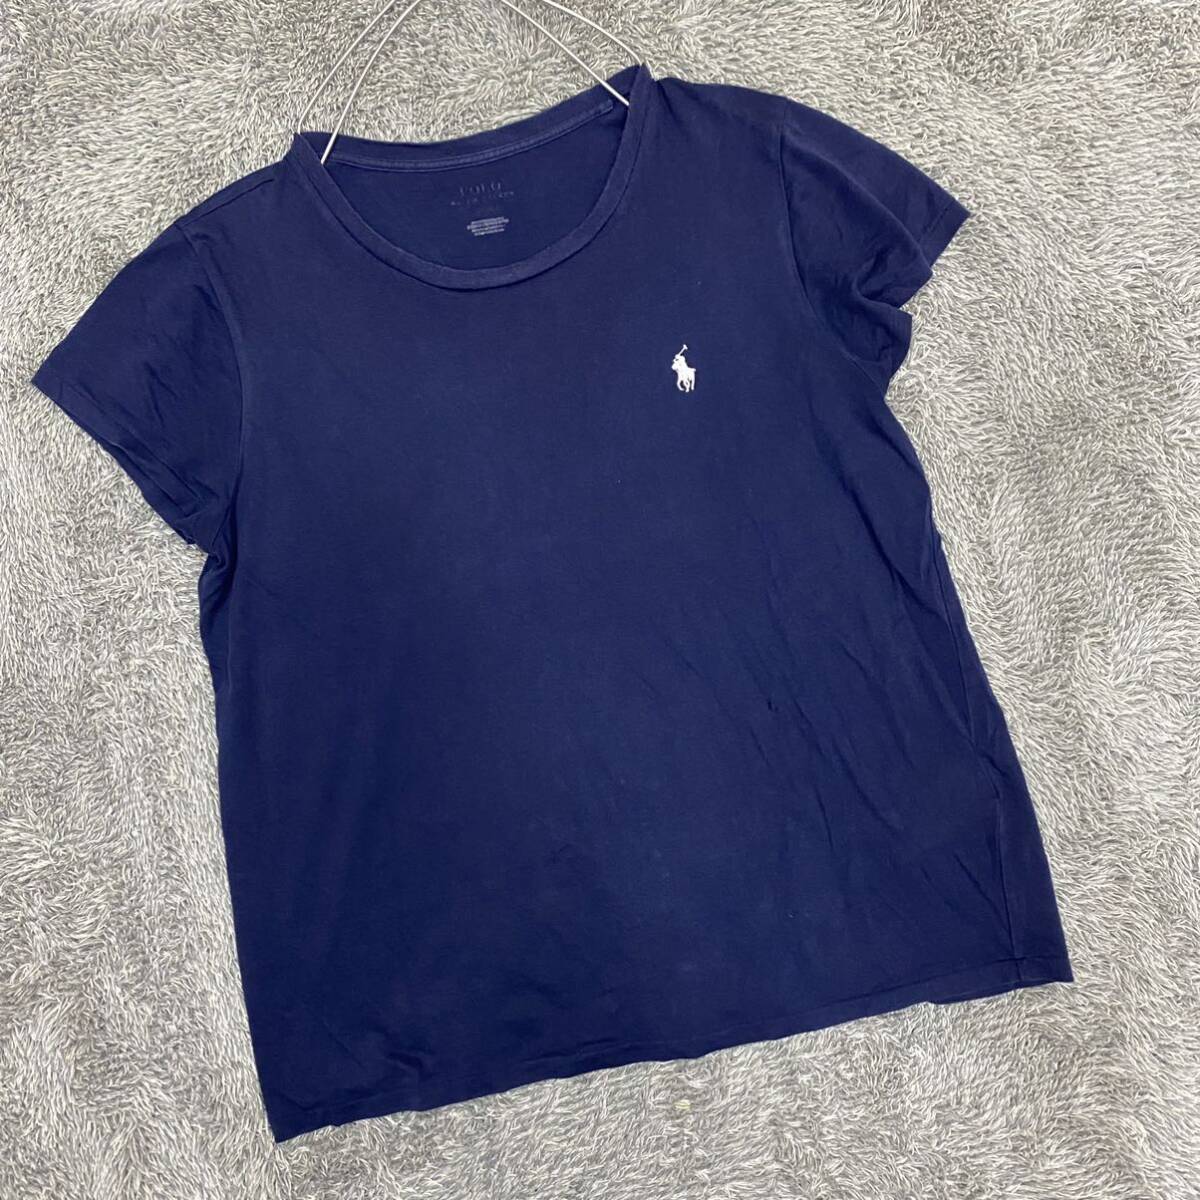 POLO RALPH LAUREN ラルフローレン Tシャツ 半袖カットソー ネイビー 紺色 レディース トップス 最落なし （O18）の画像1